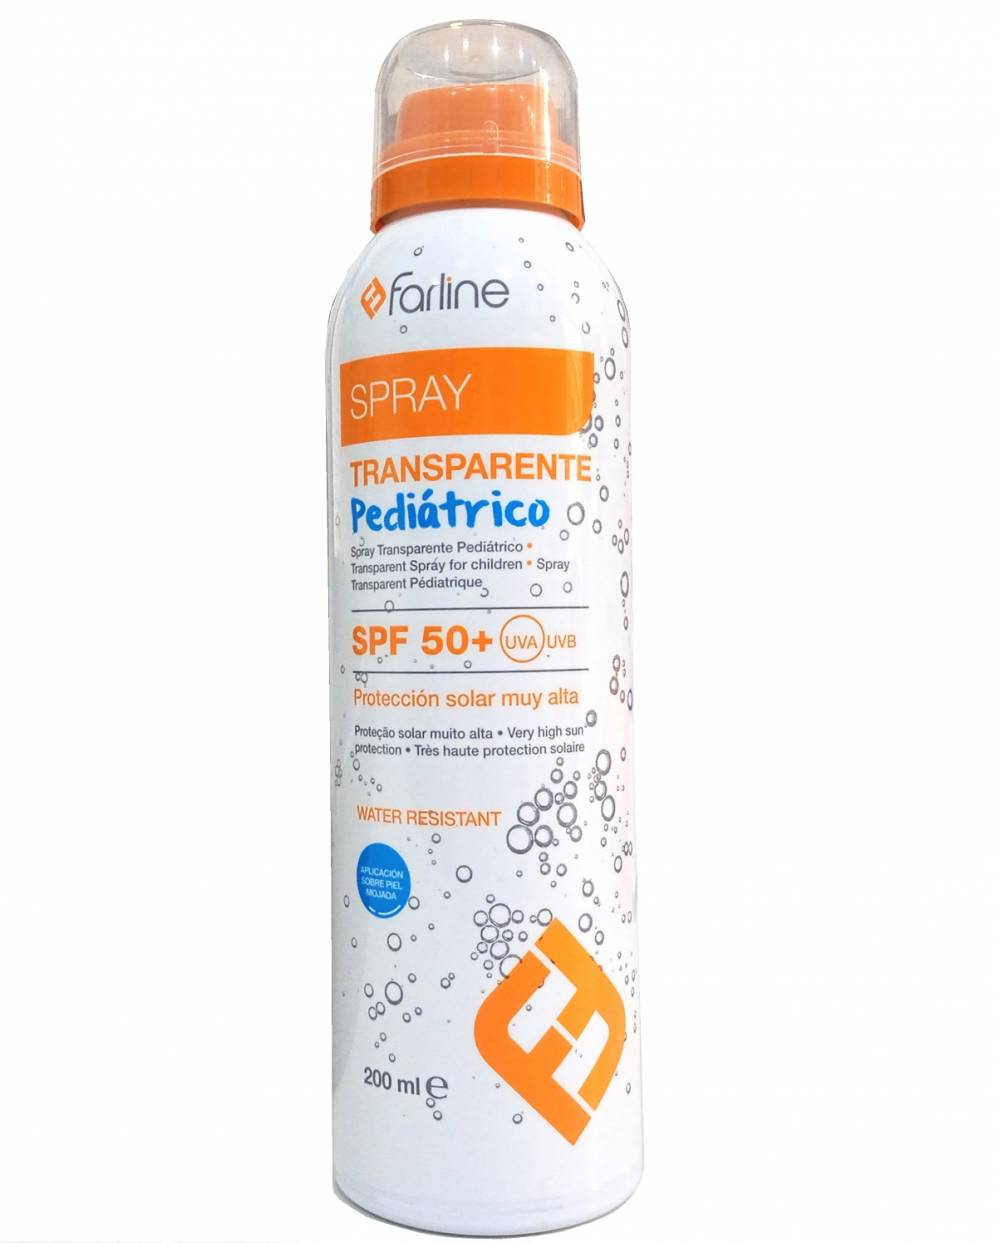 Solar Farline - Spray transparente pediátrico Spf 50+ - 200 ml